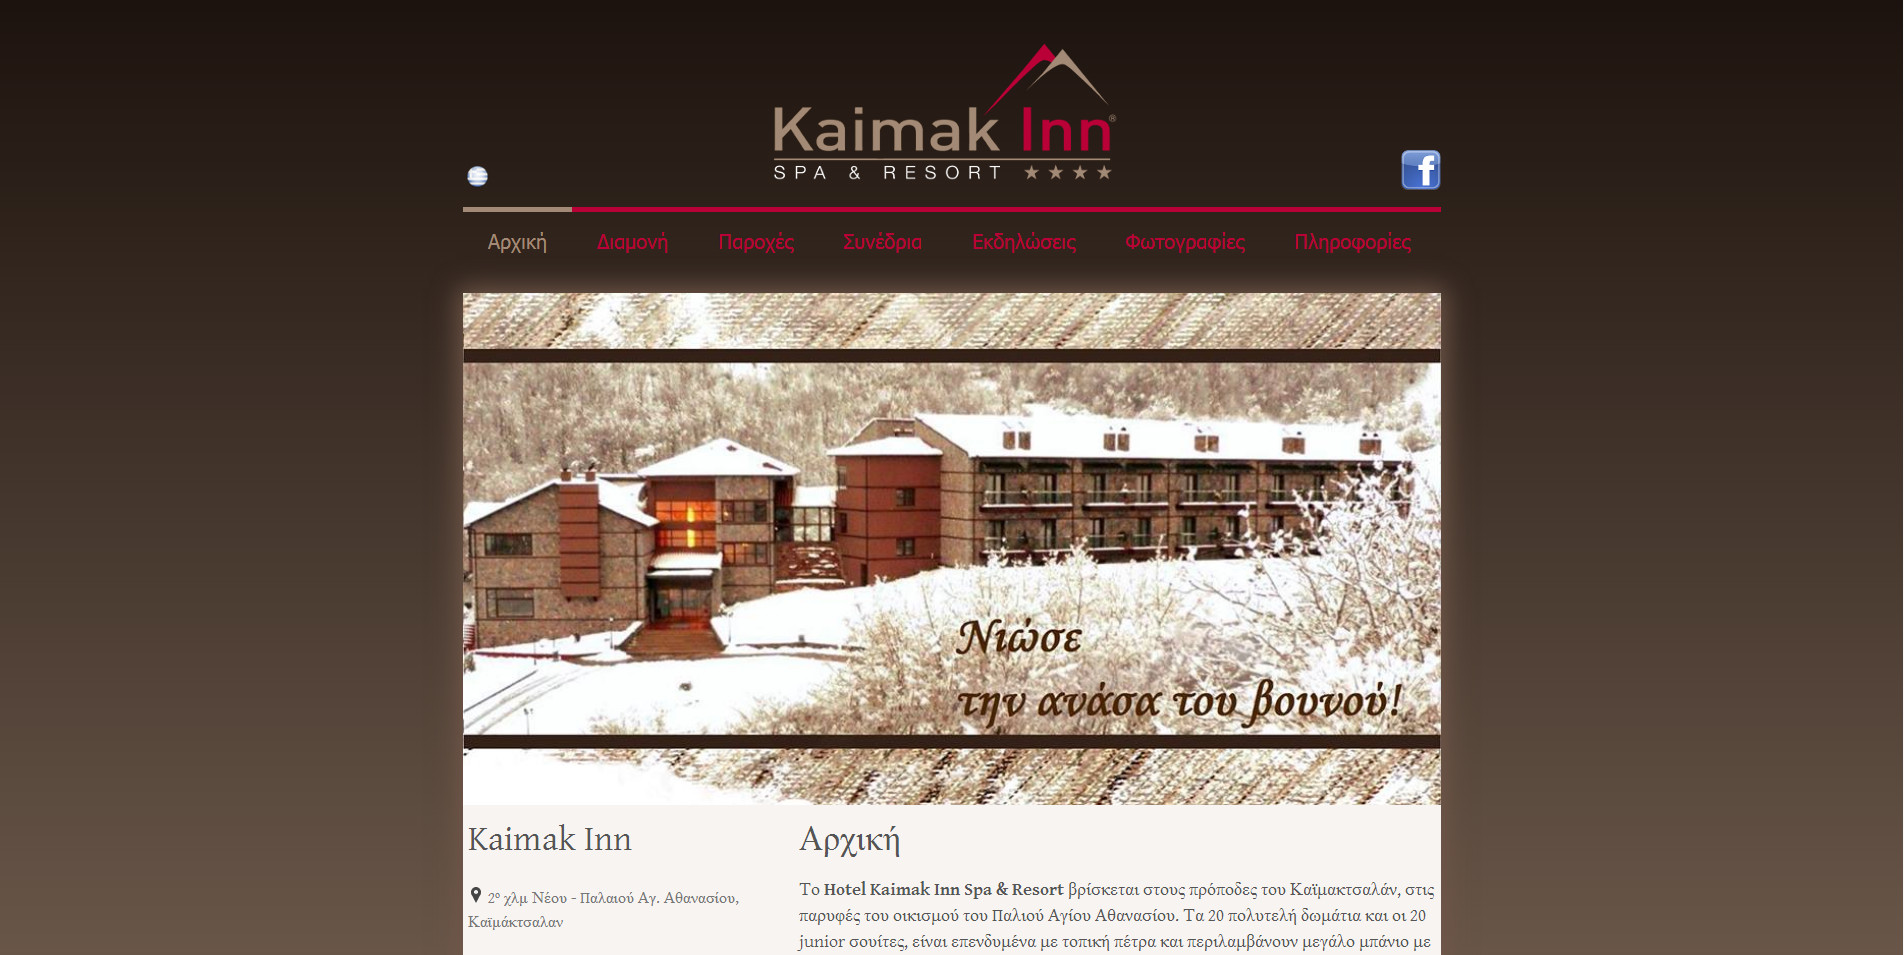 Kaimak Inn